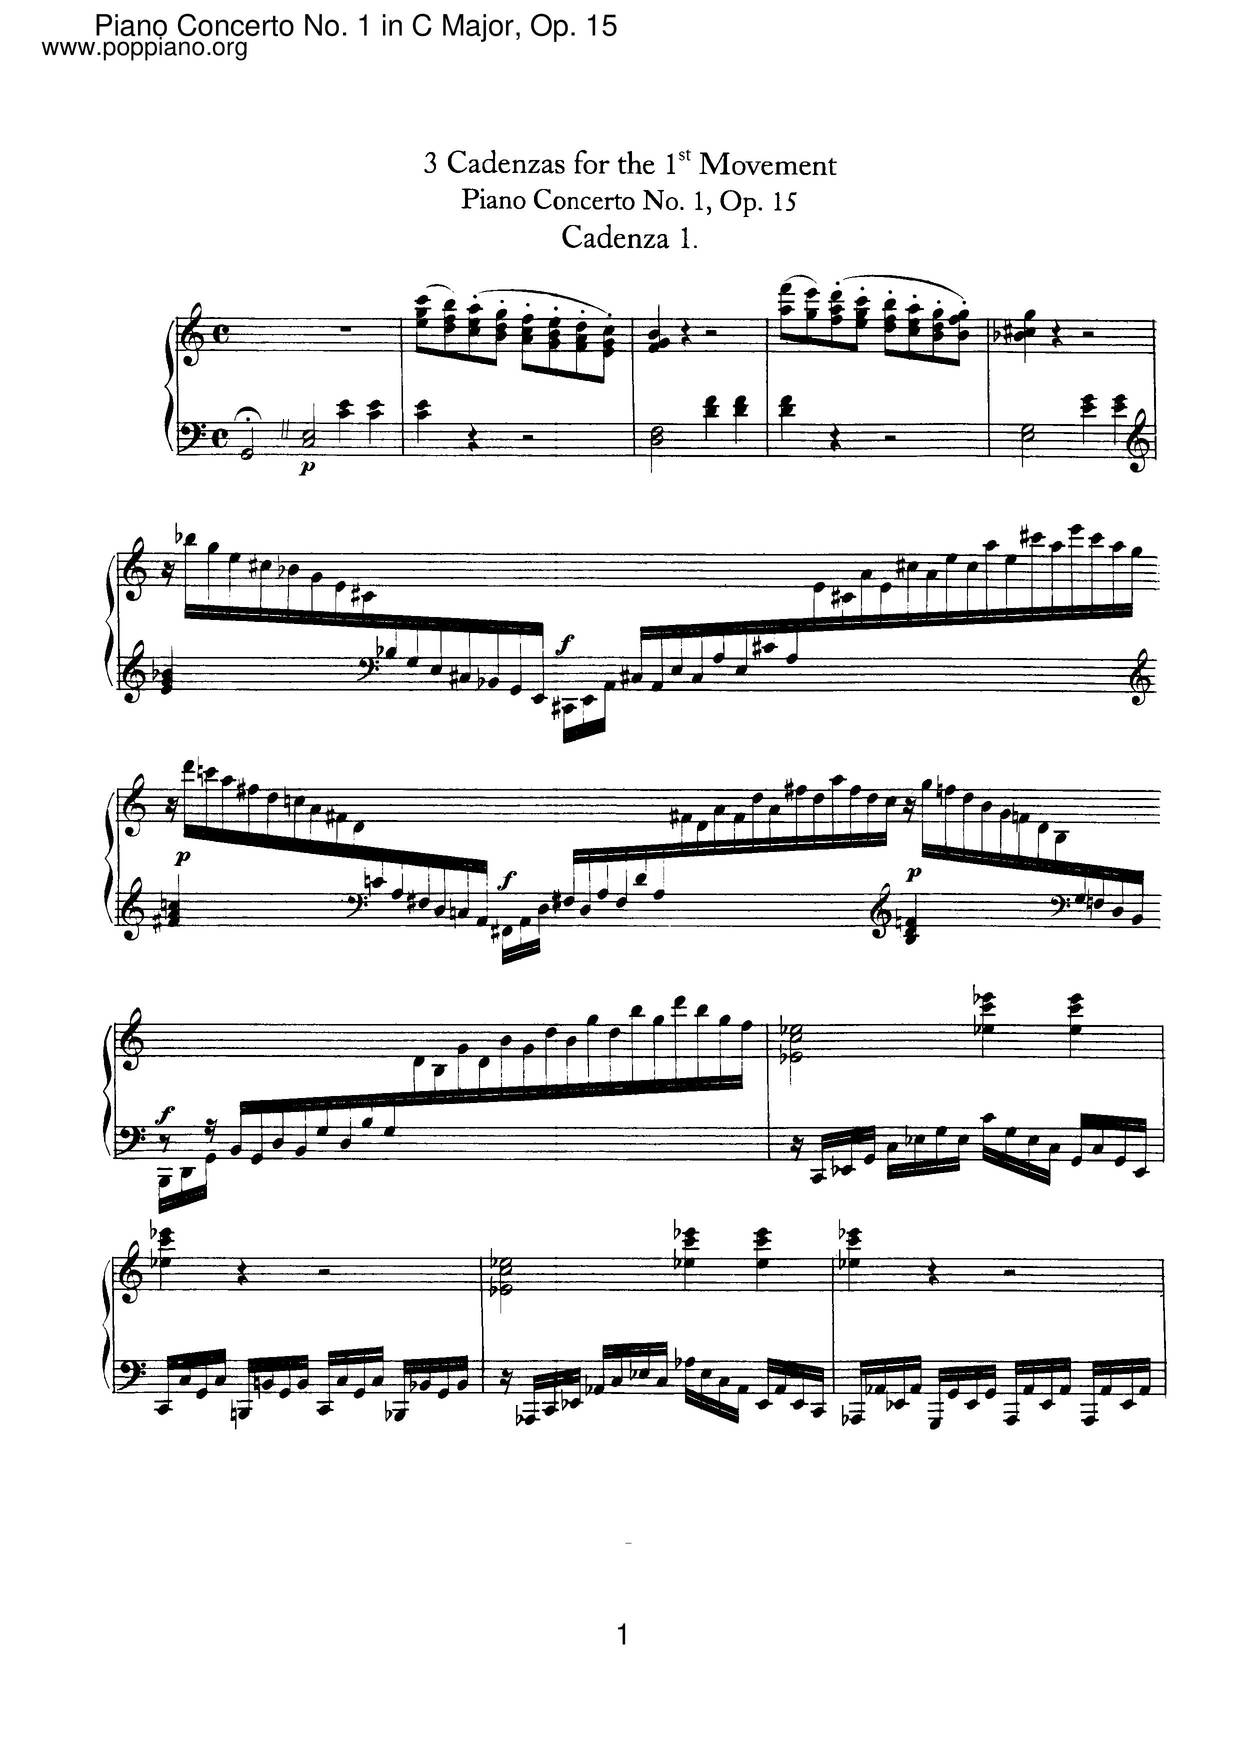 Cadenzas For Piano Concertos Nos. 1-4 Score